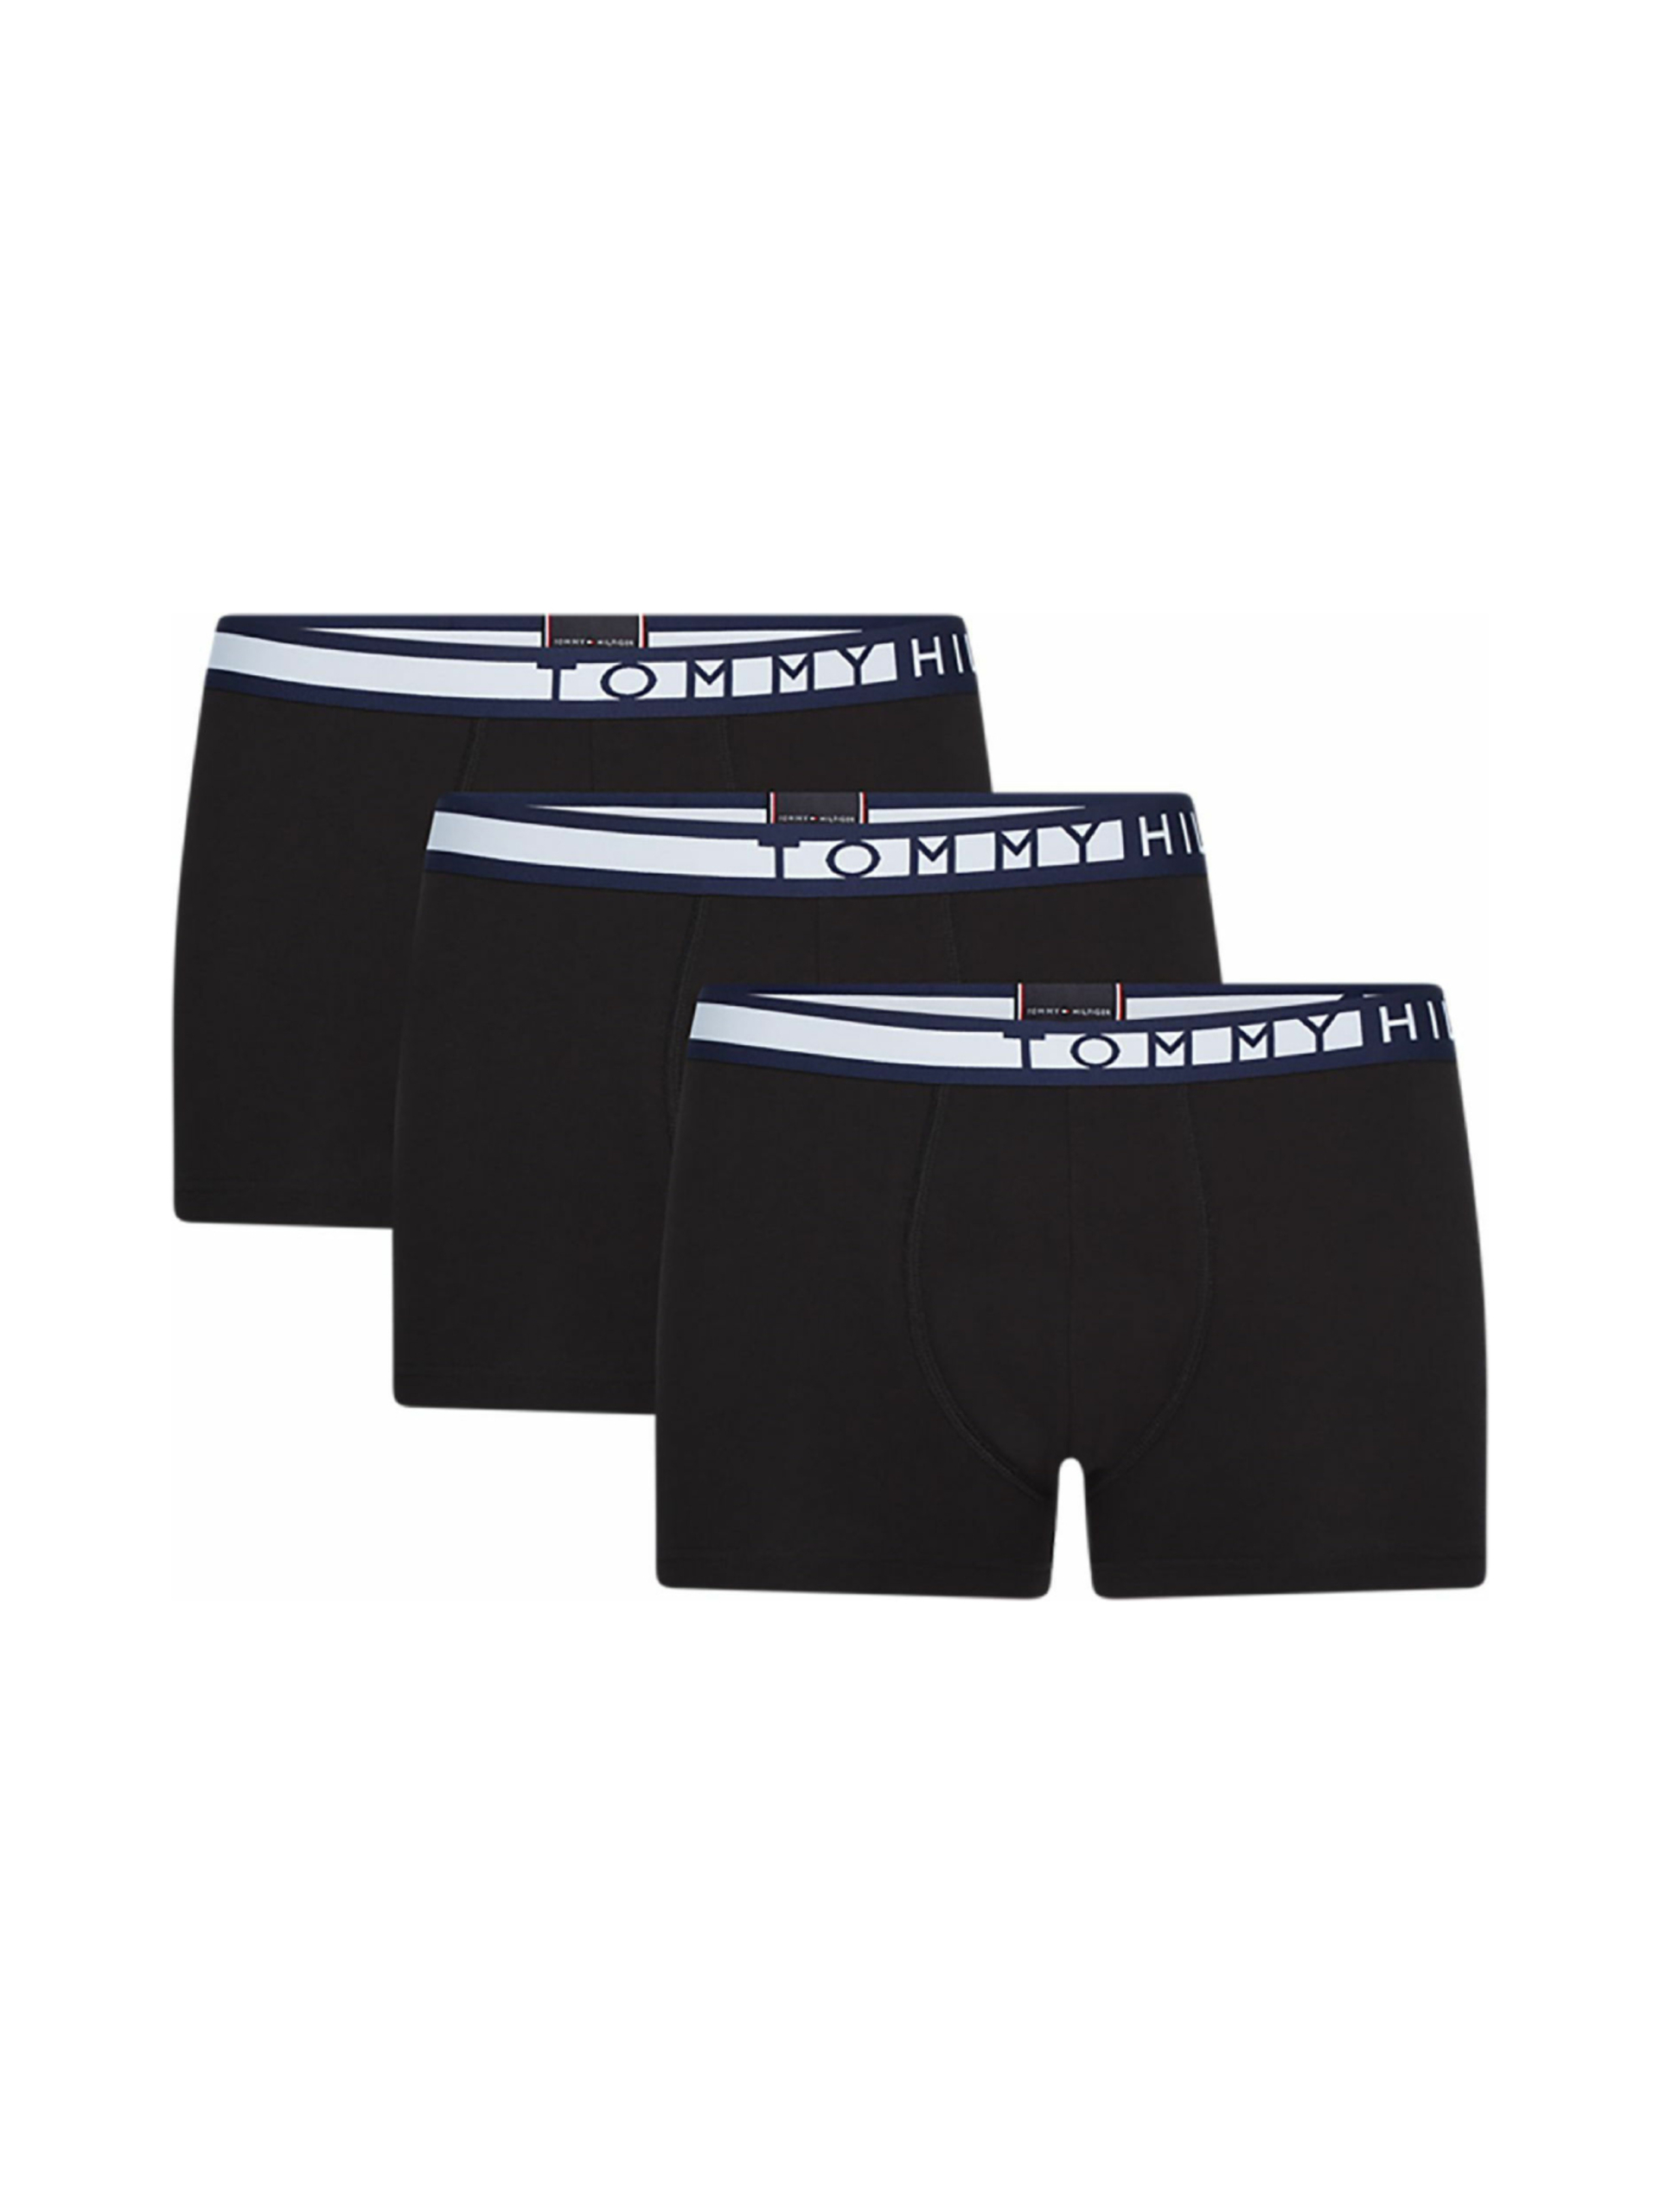 Tommy Hilfiger pánské černé boxerky 3 pack - M (0R9)